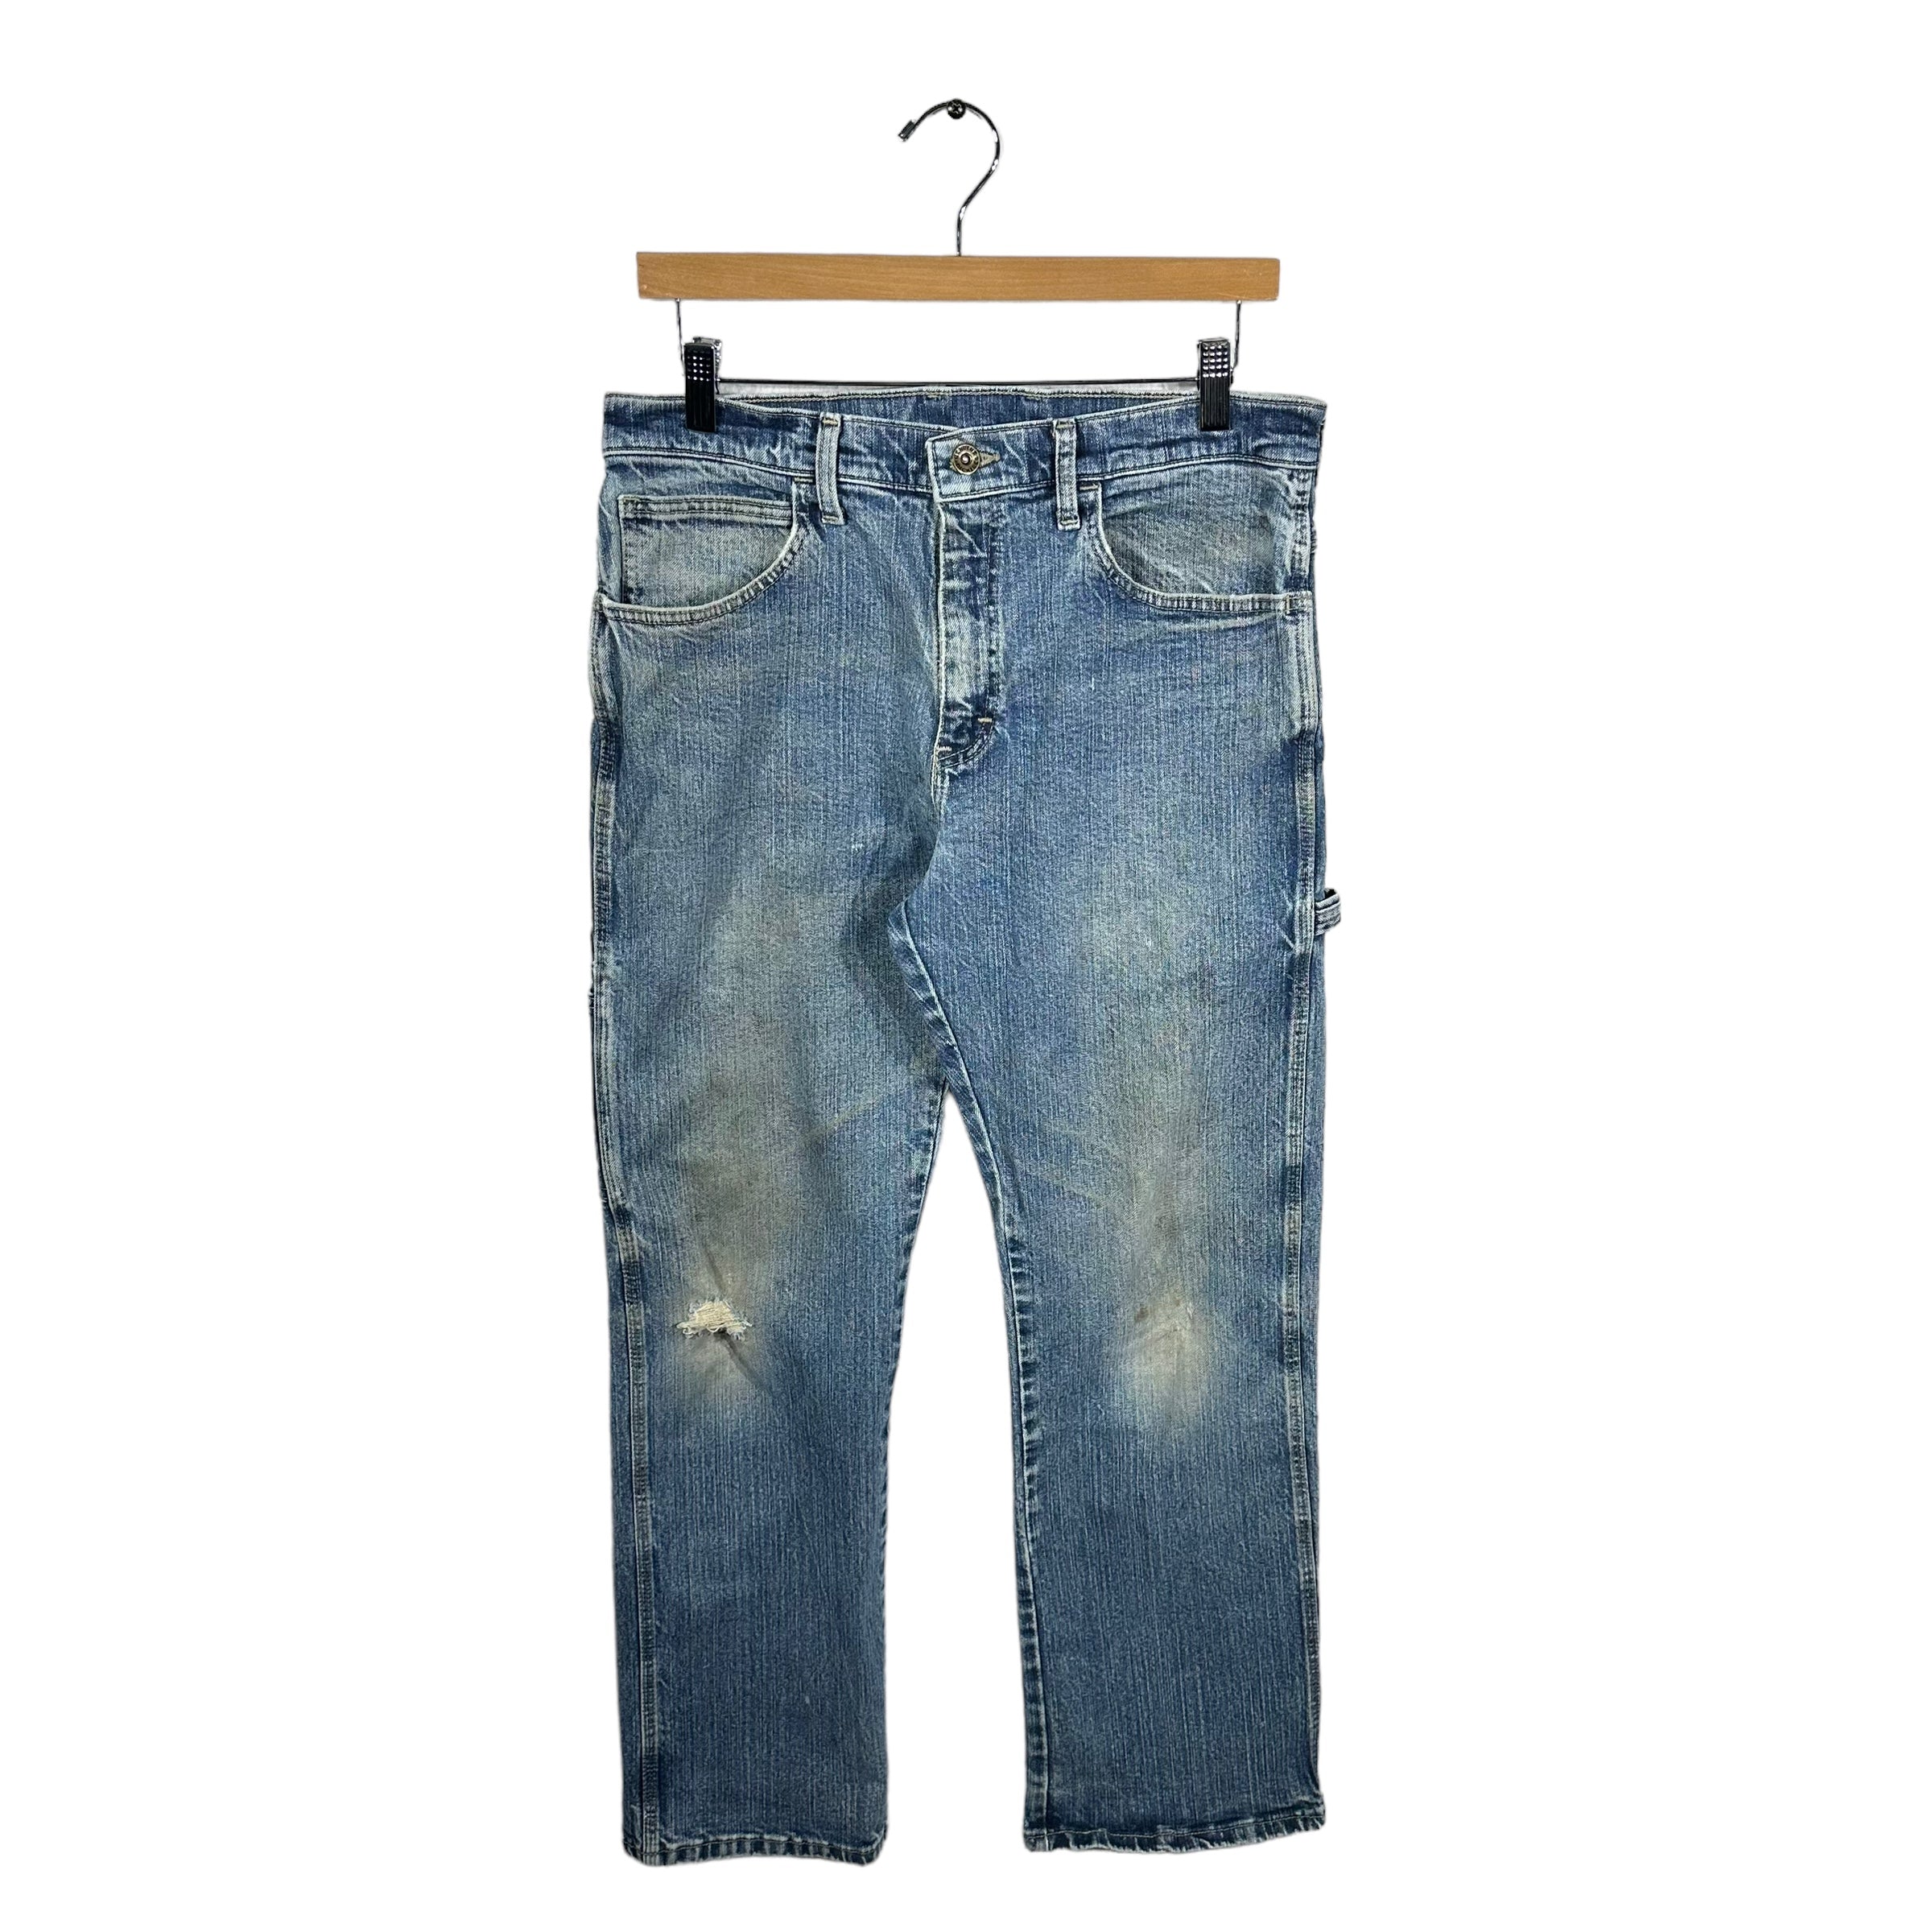 Vintage Genuine Dickies Carpenter Denim Jeans